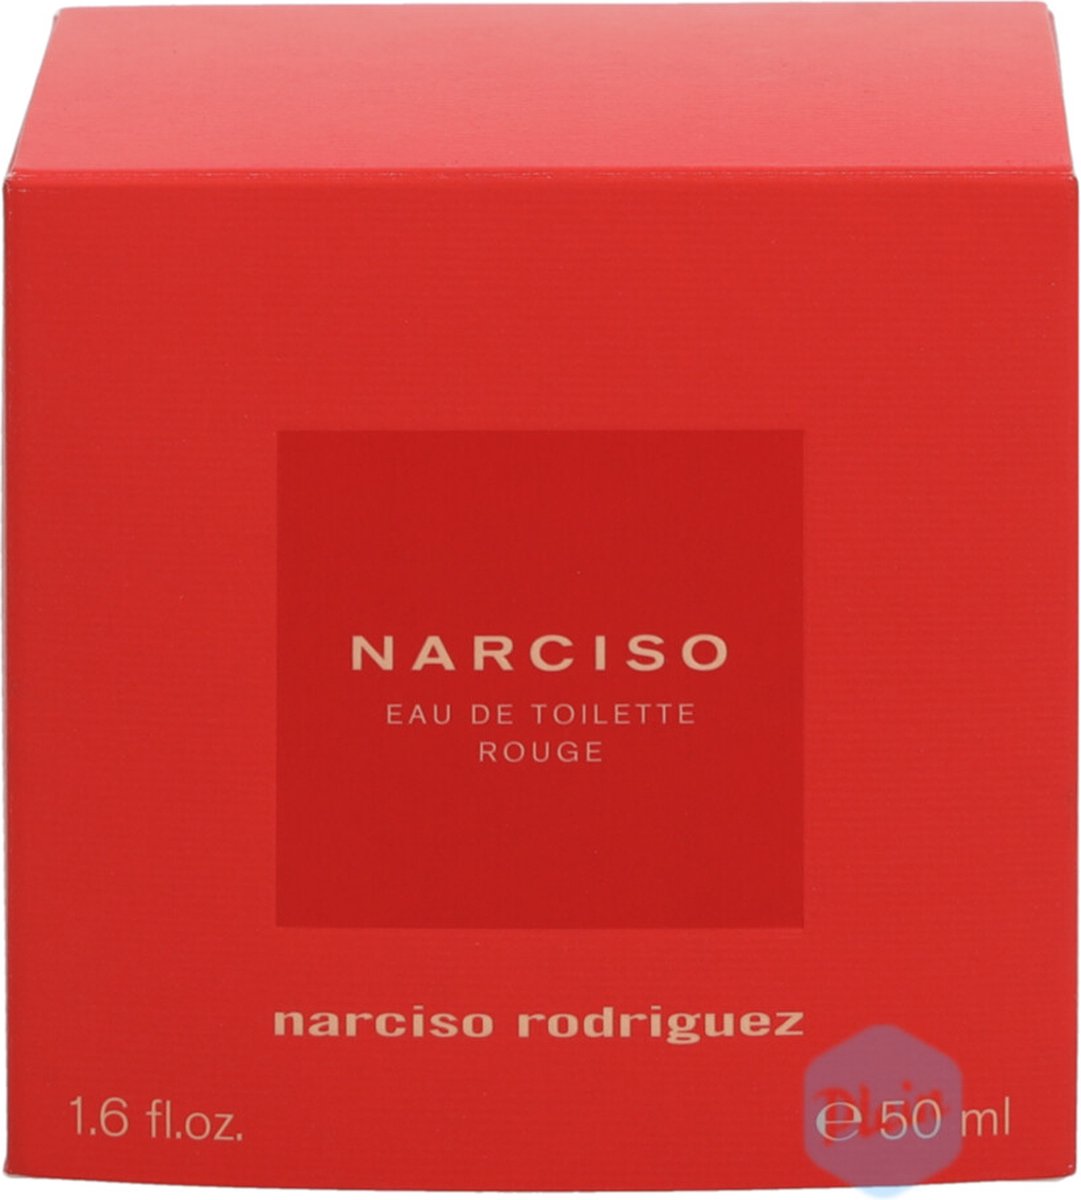 Narciso Rodriguez rouge 50ml eau de toilette